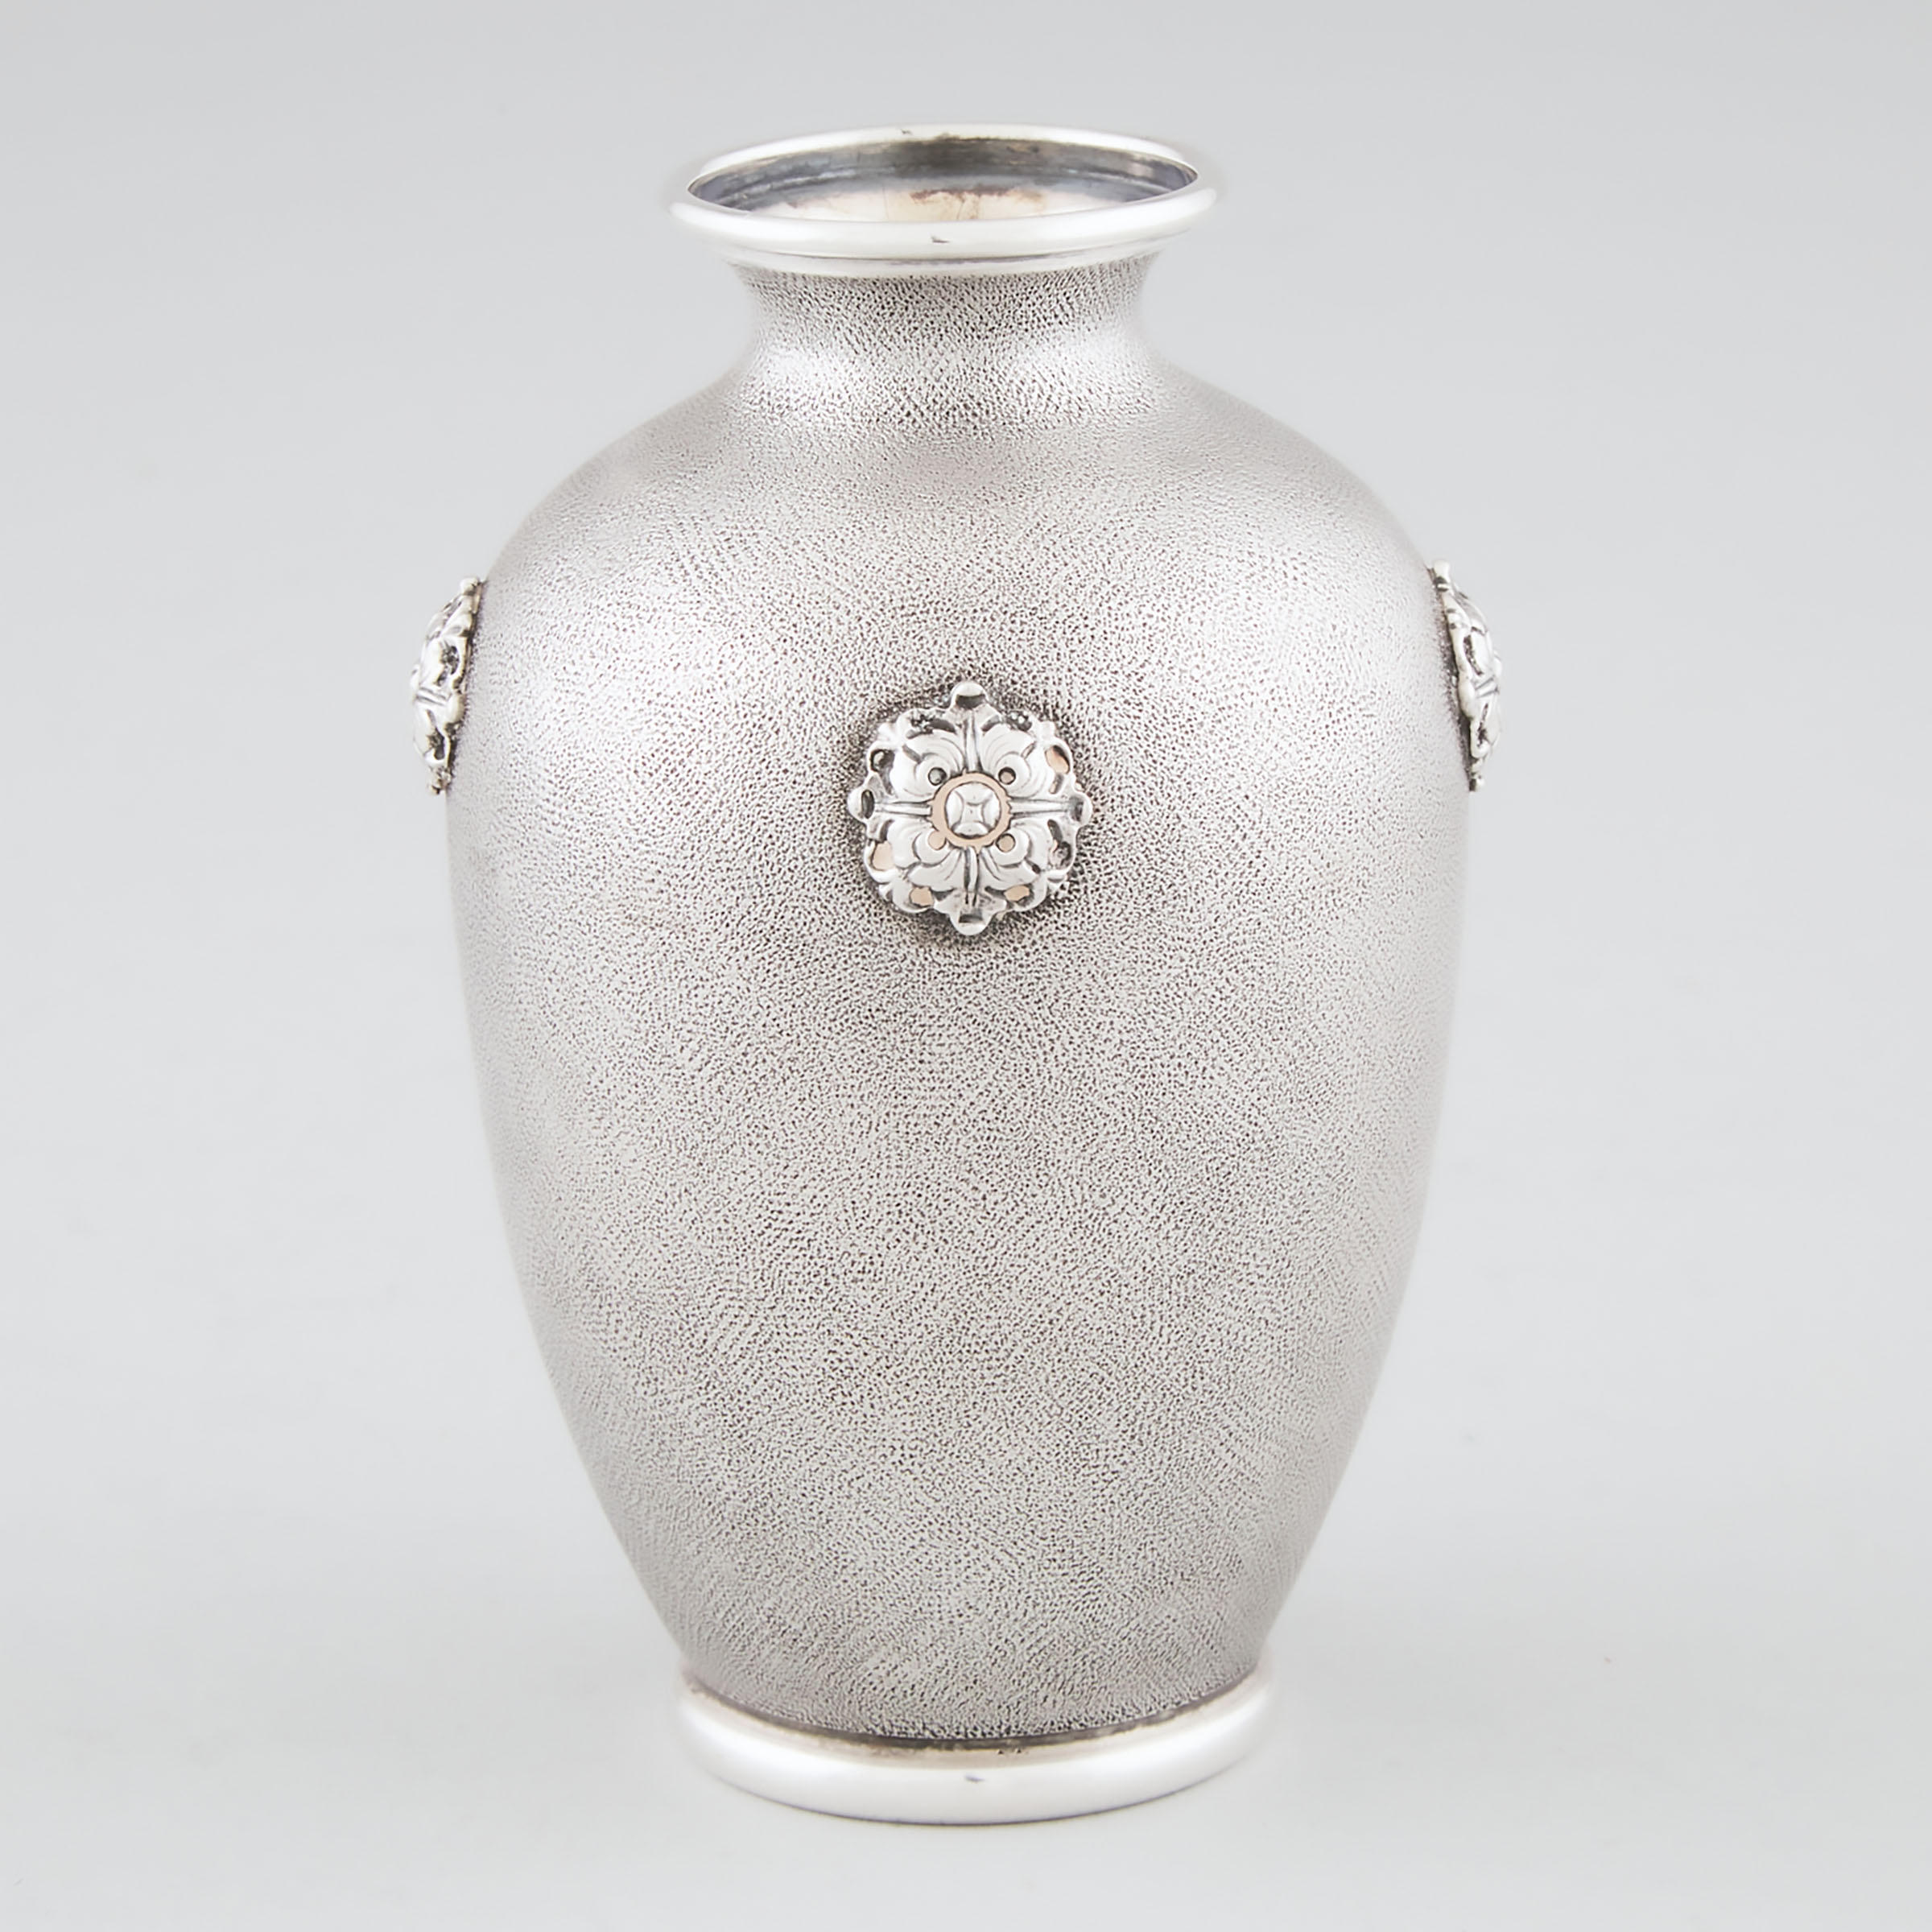 Italian Silver Small Vase Mario 2a5669